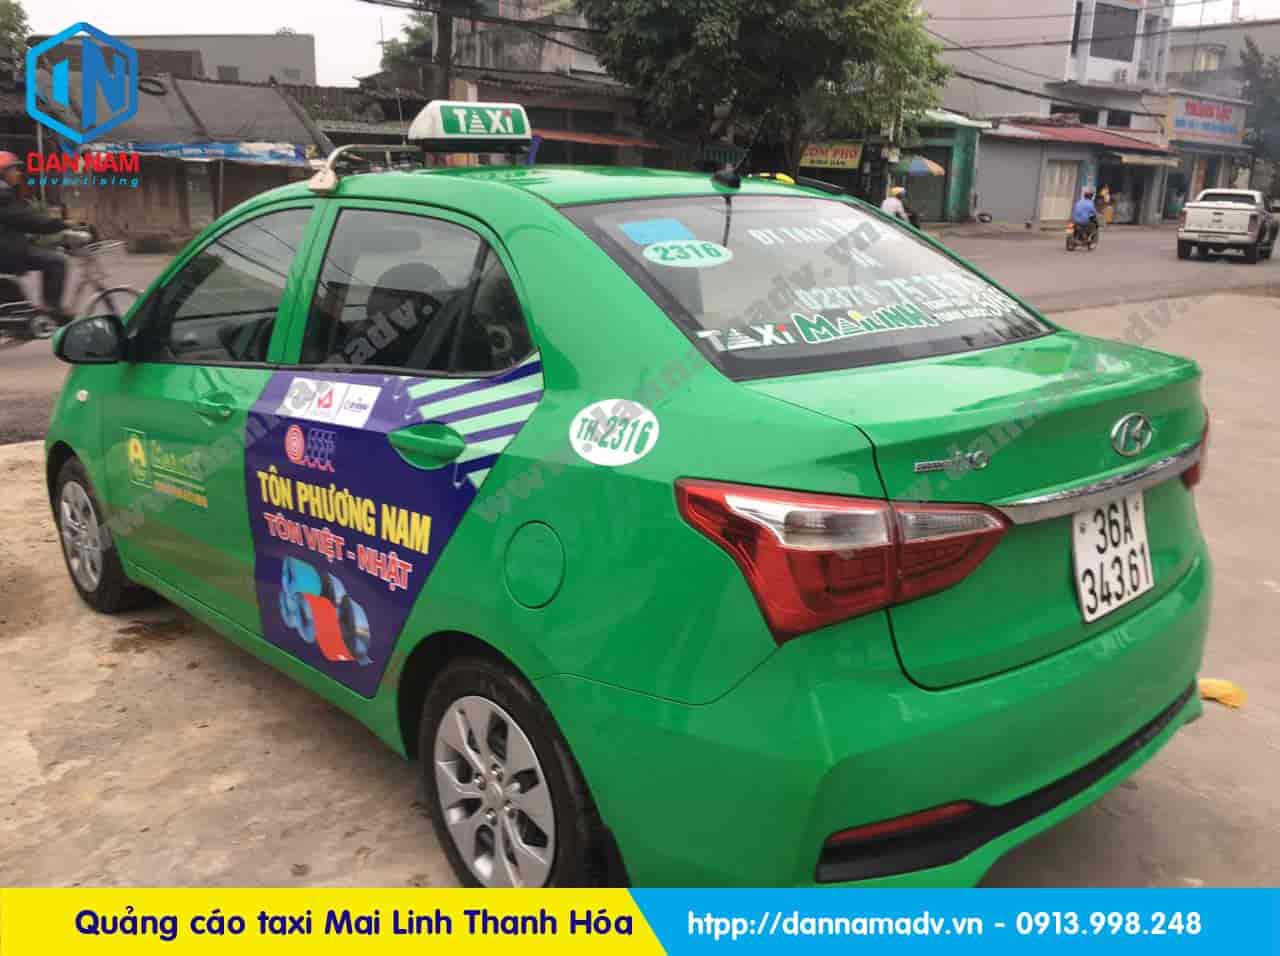 Quảng cáo trên taxi Mai Linh tại Thanh Hóa - Tôn Phương Nam